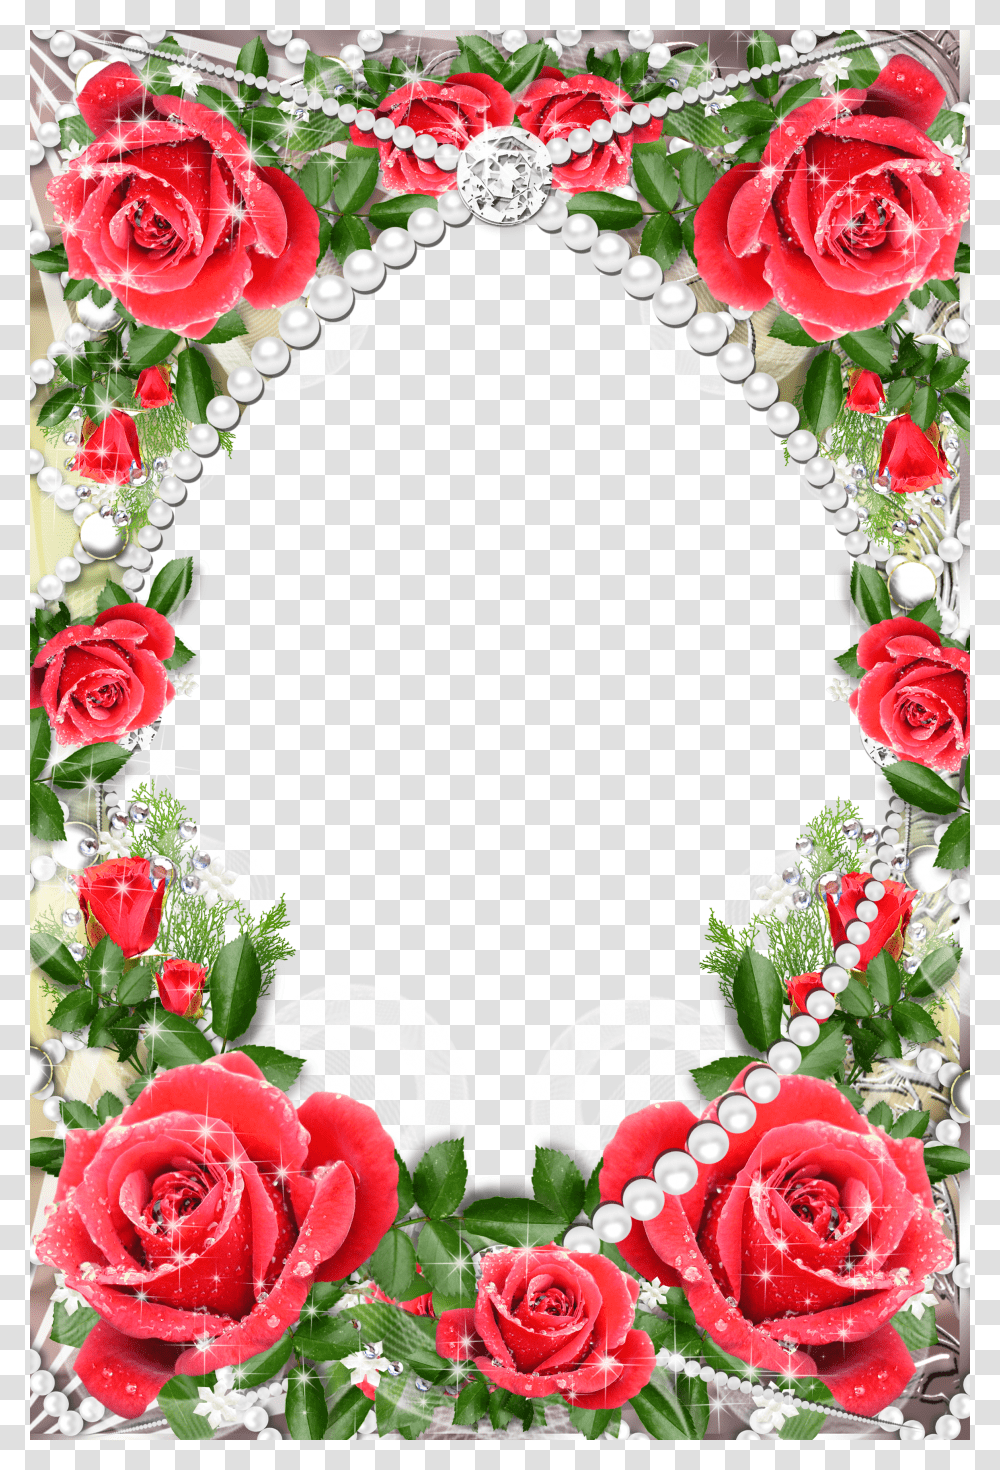 Red Rose Flower Border Design Transparent Png